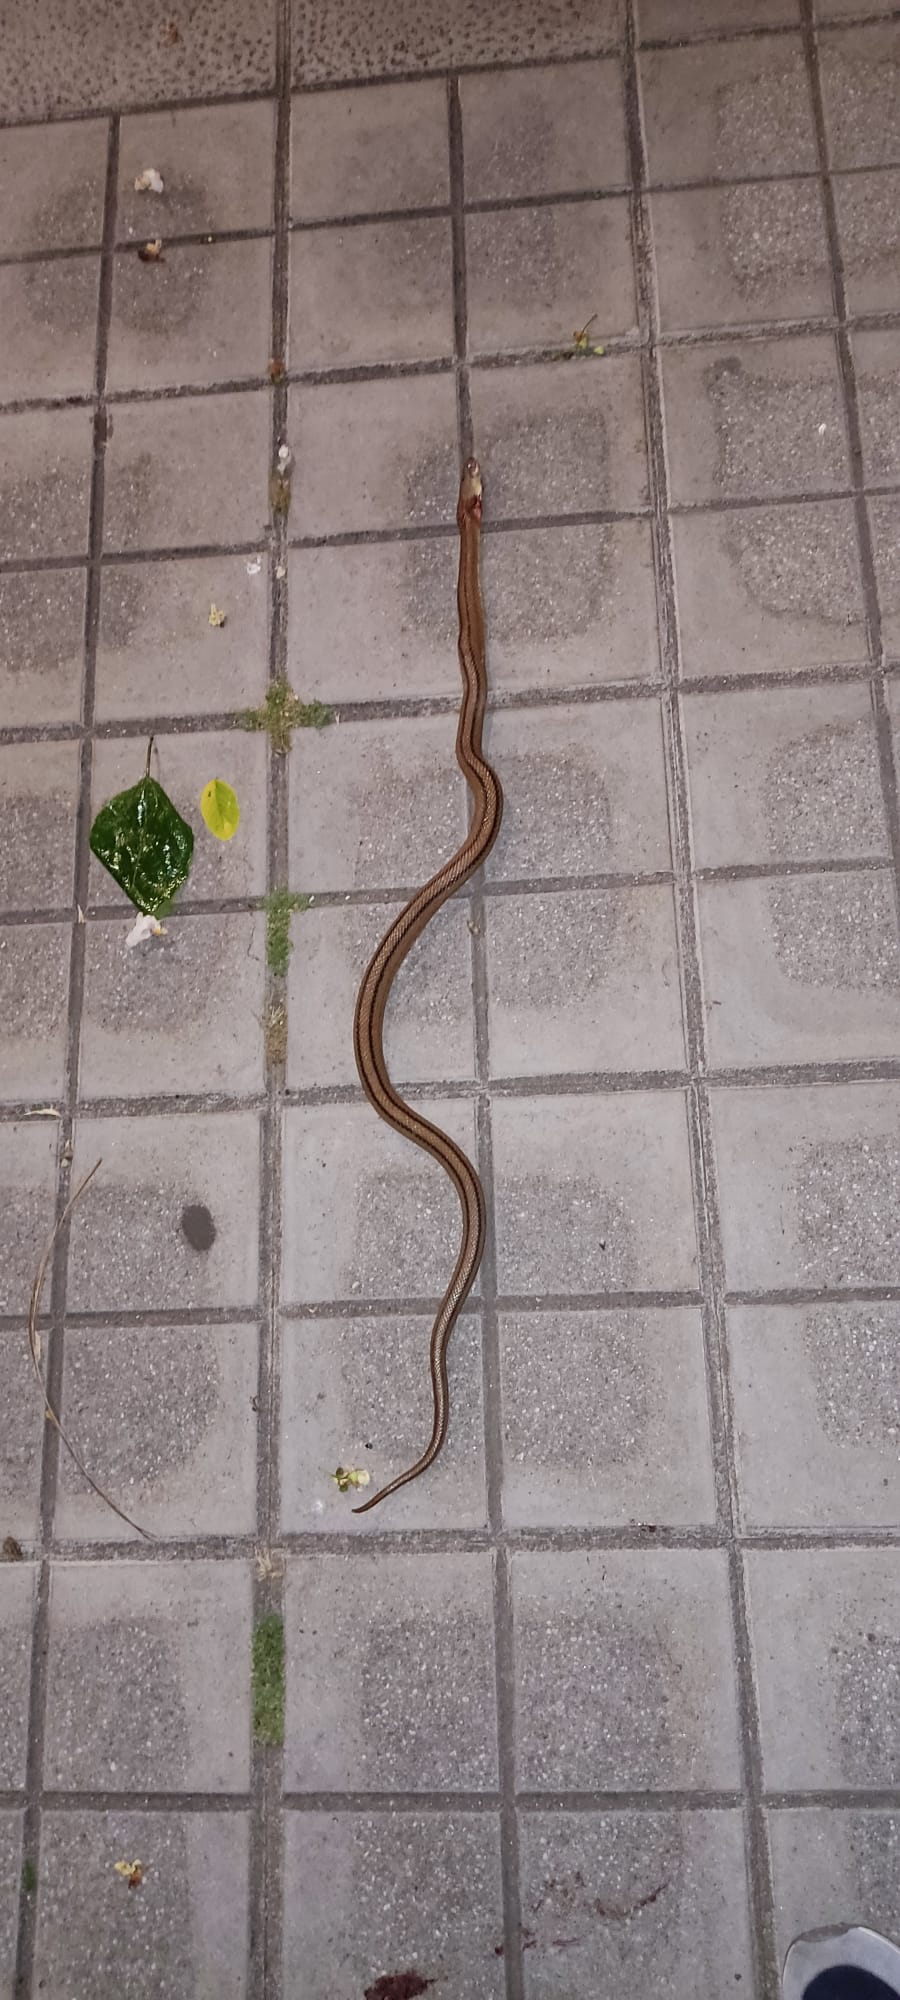 Reptil en zonas peatonales, Huerta de la Vega